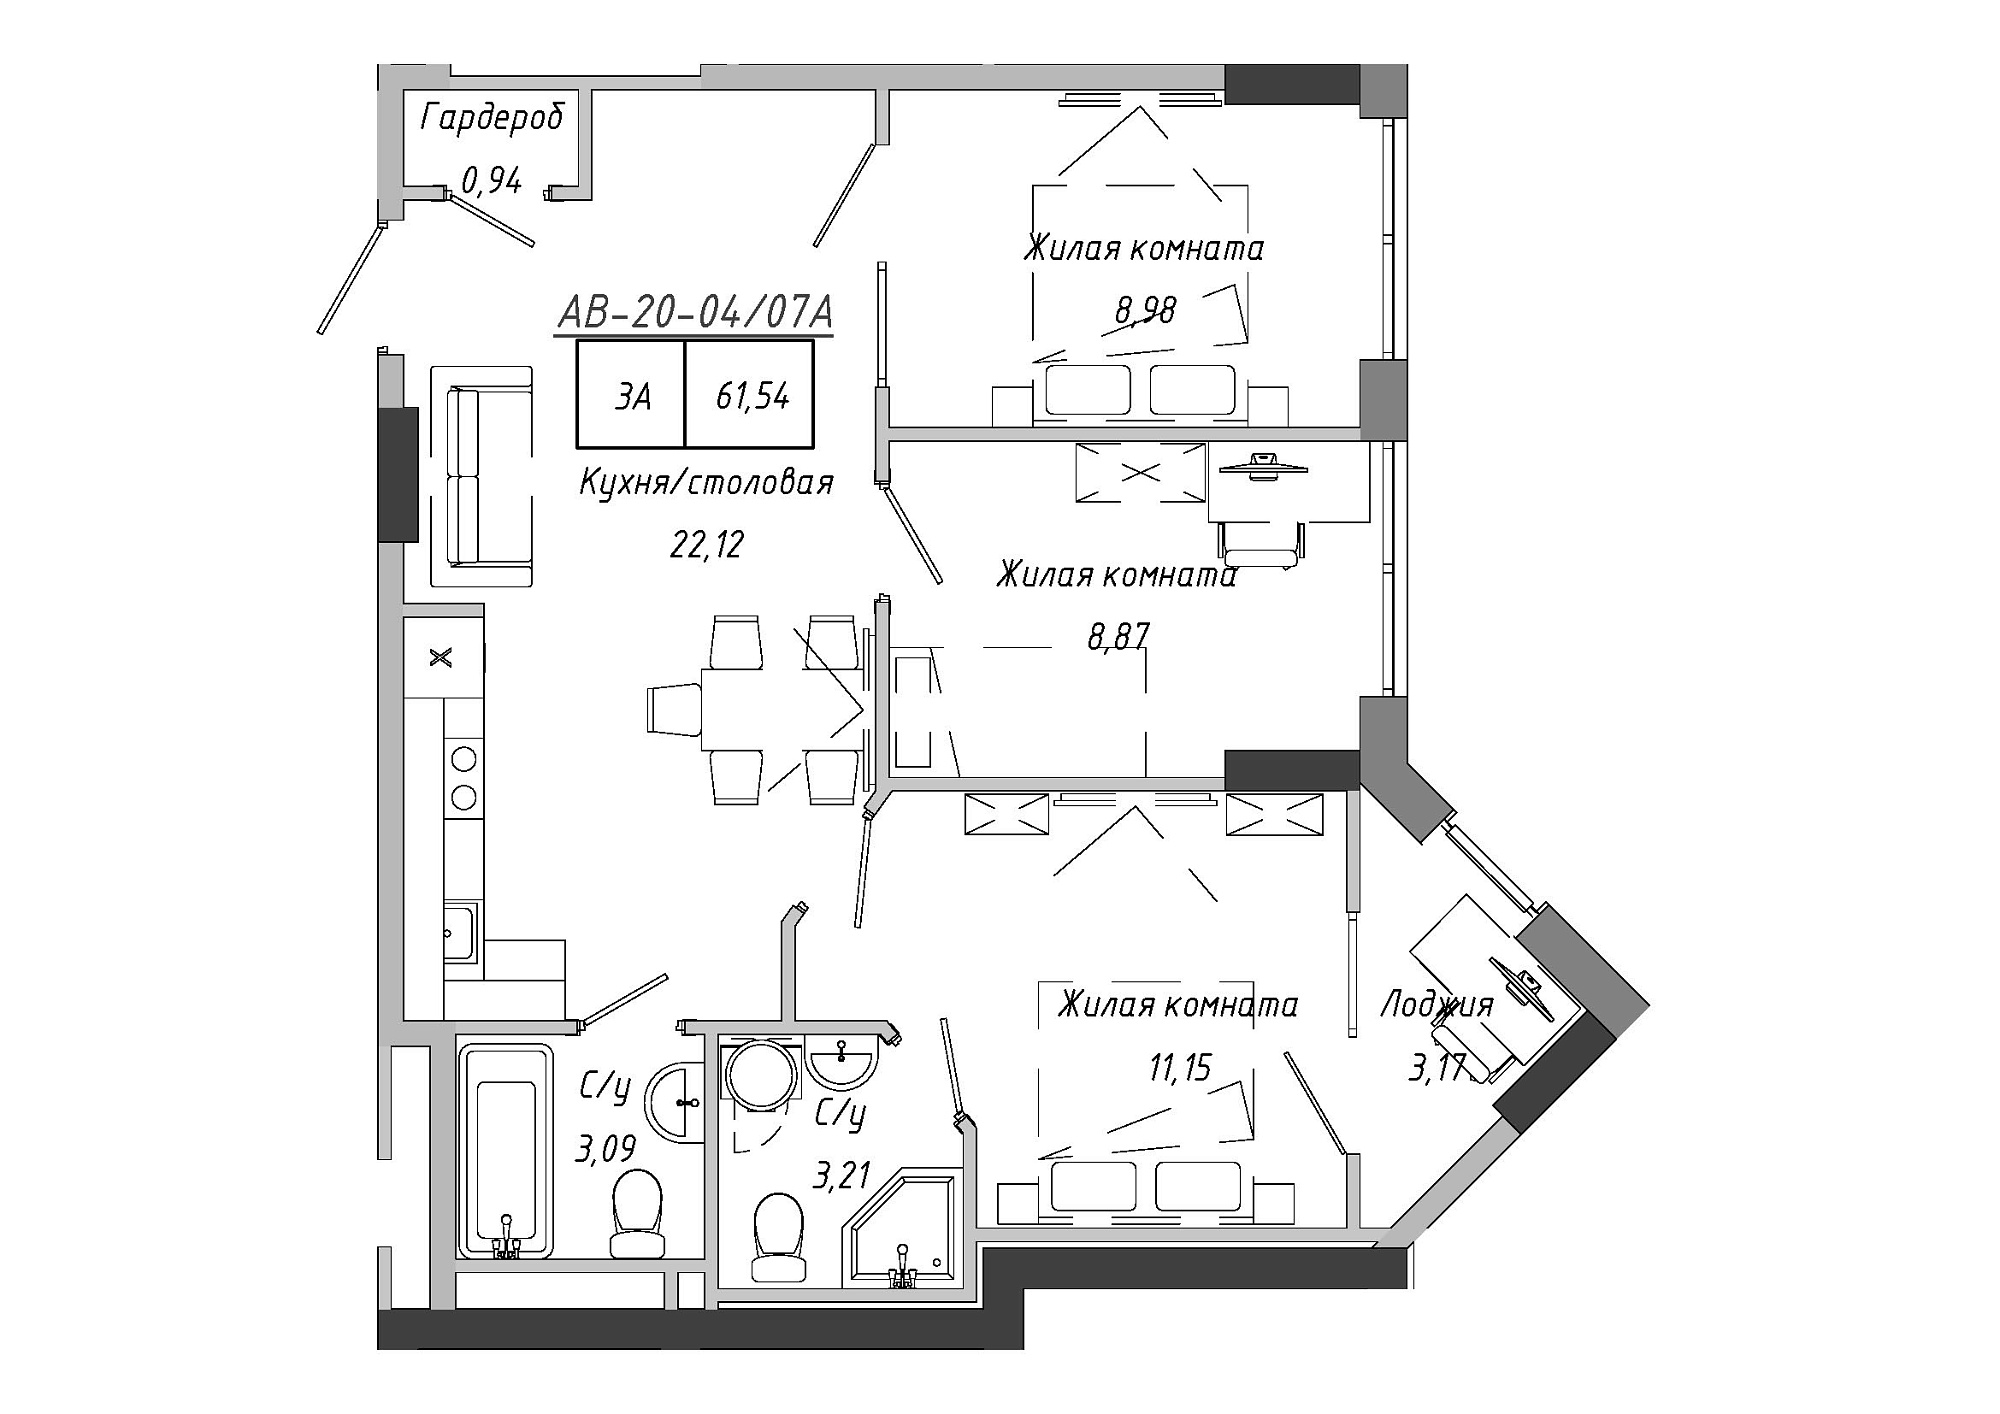 Планування 3-к квартира площею 61.54м2, AB-20-04/0007а.